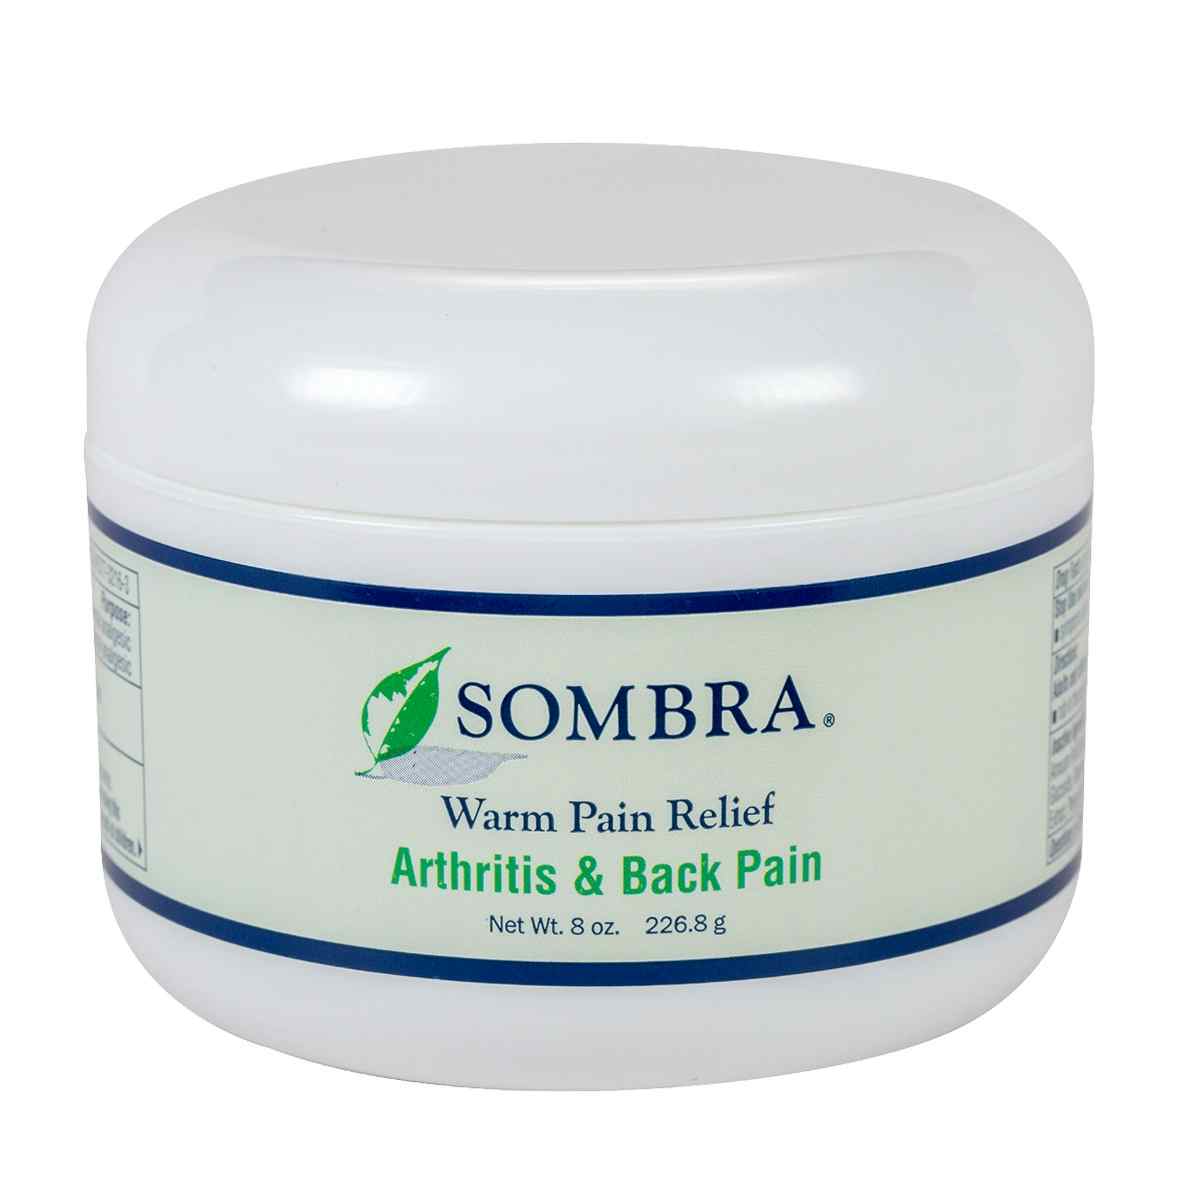 Sombra Warm Pain Relief, SC080, 8 oz. - 1 Jar